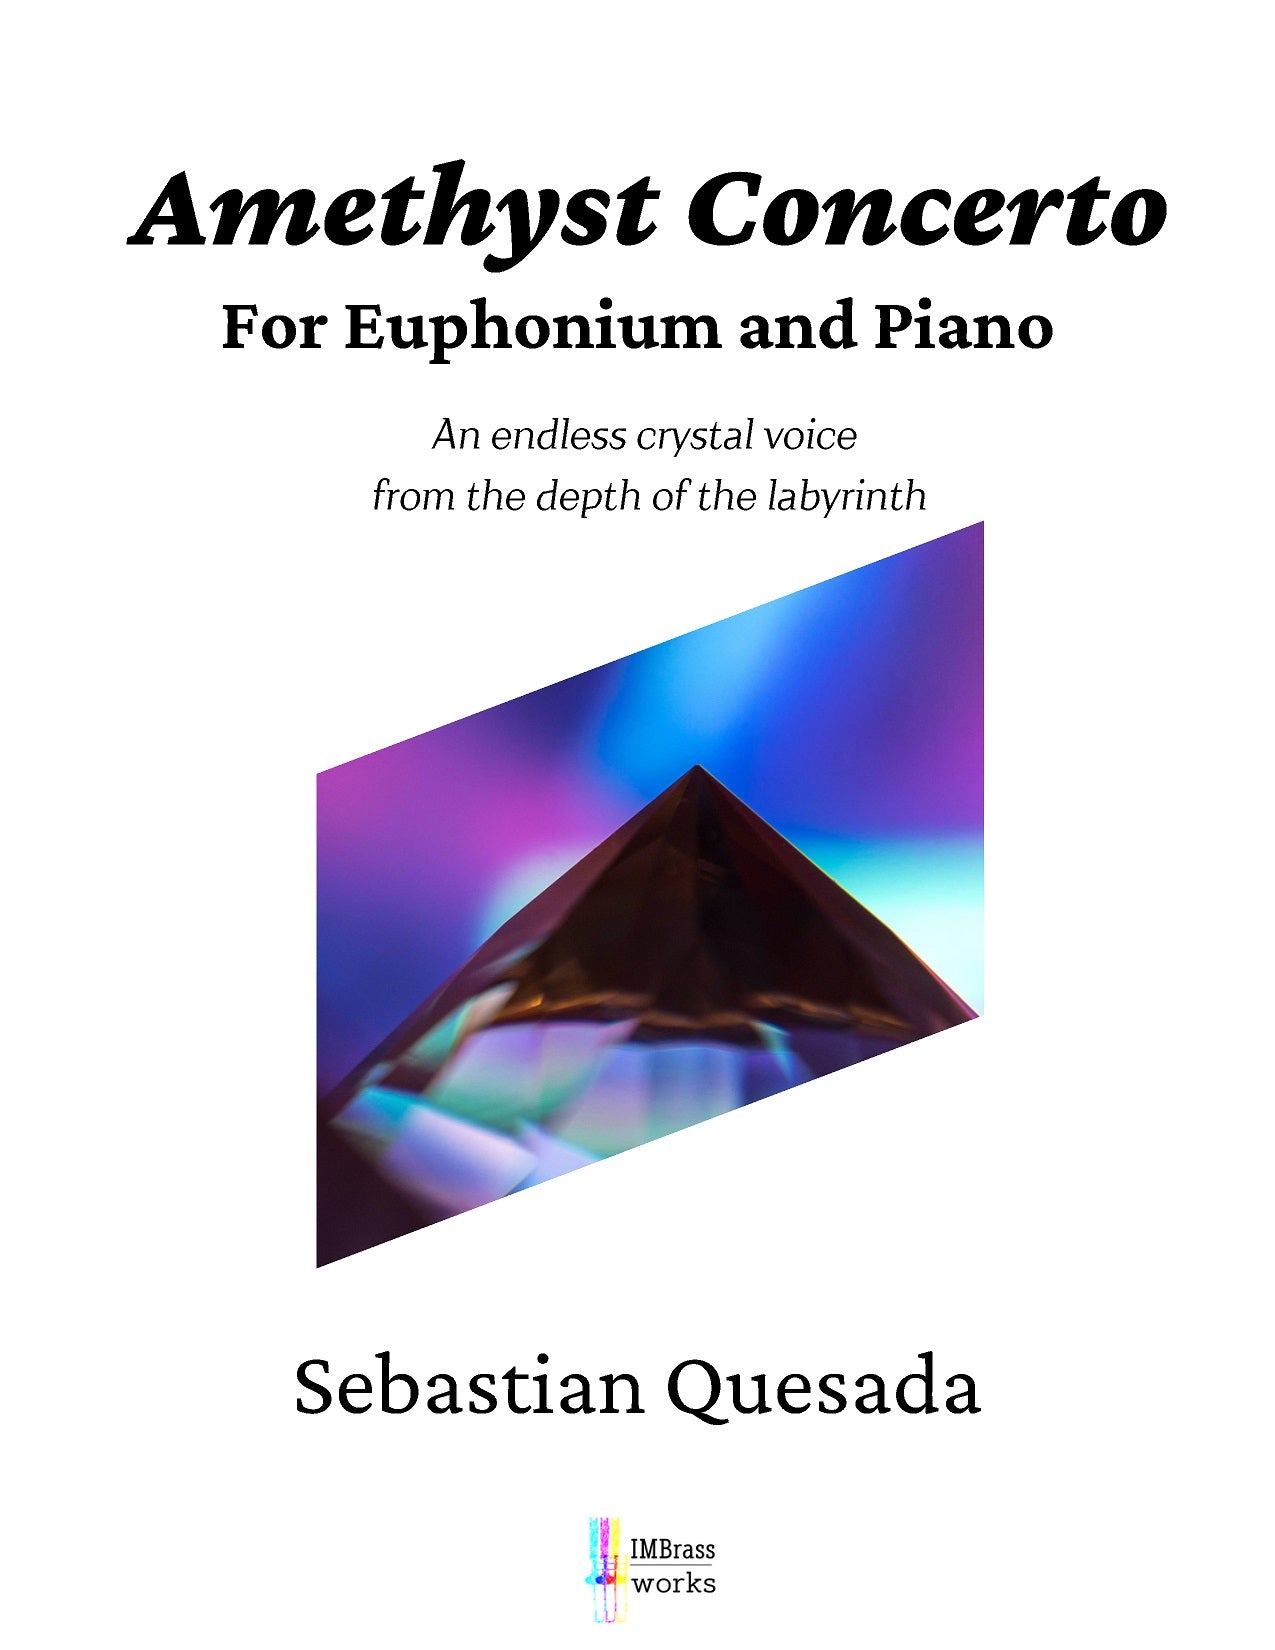 Quesada - Amethyst Concerto